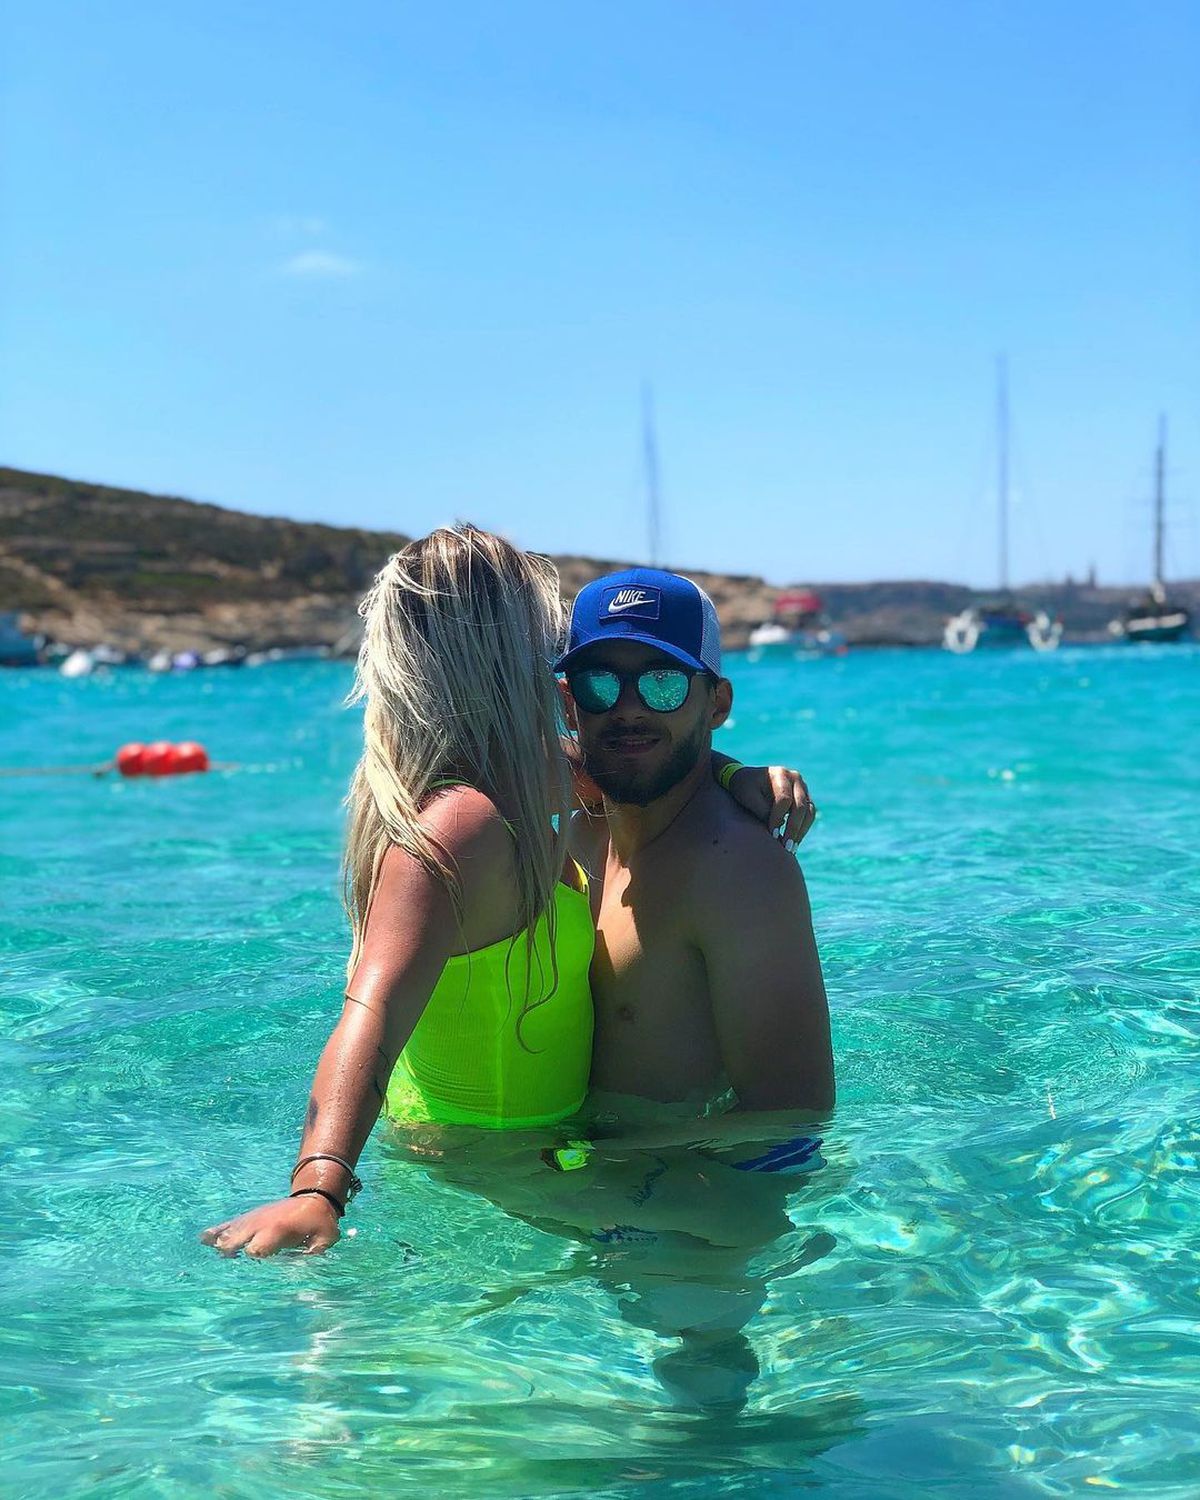 FOTO Soția unui fotbalist din Liga 1 face senzație pe Instagram! Fotografii provocatoare din vacanță